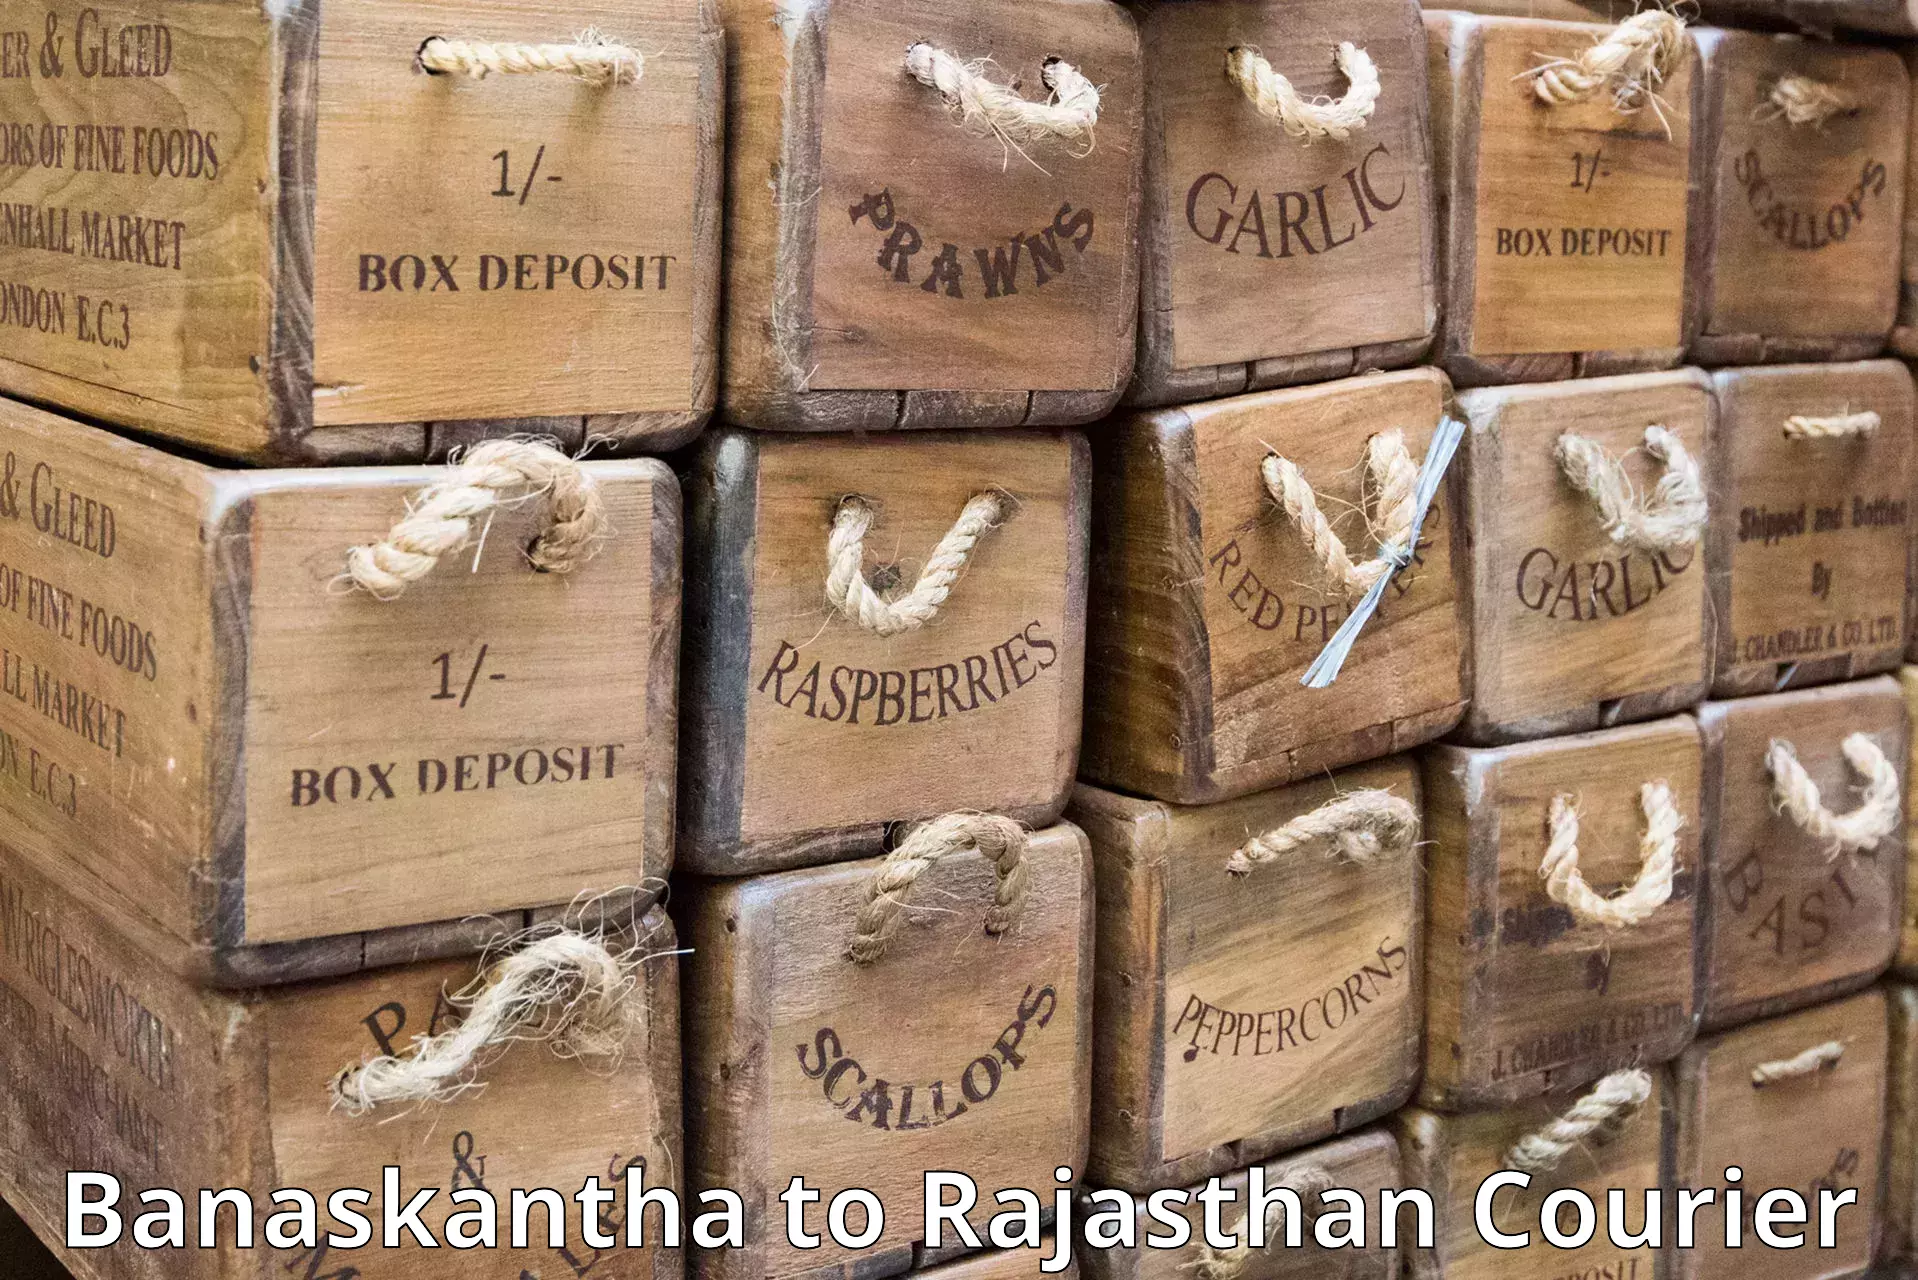 Global shipping networks Banaskantha to Nimbahera